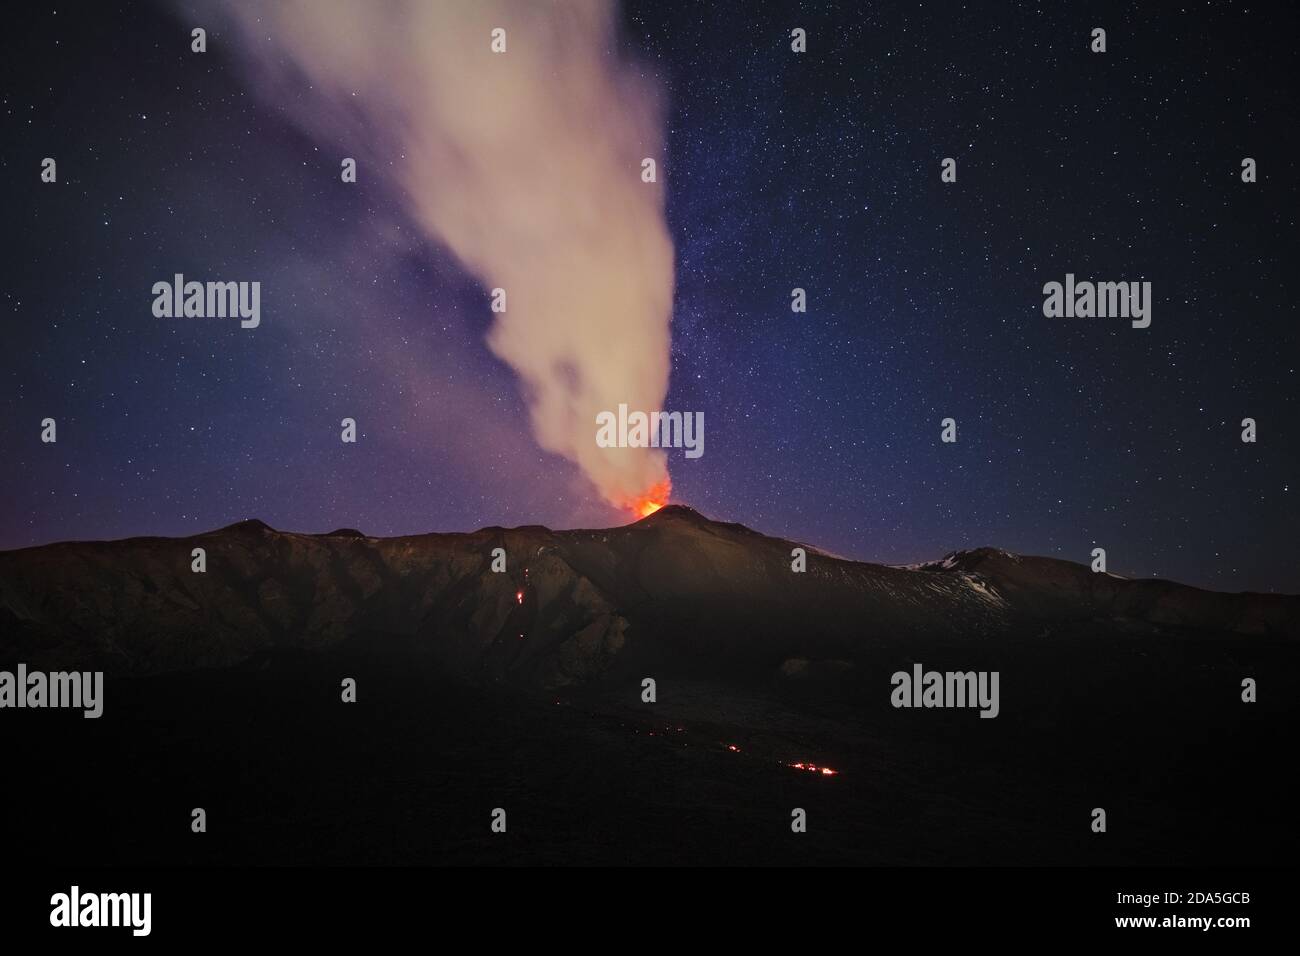 Rauch vom Vulkan Ätna während einer Eruption in der Nacht gegen Sternenhimmel, Sizilien Stockfoto